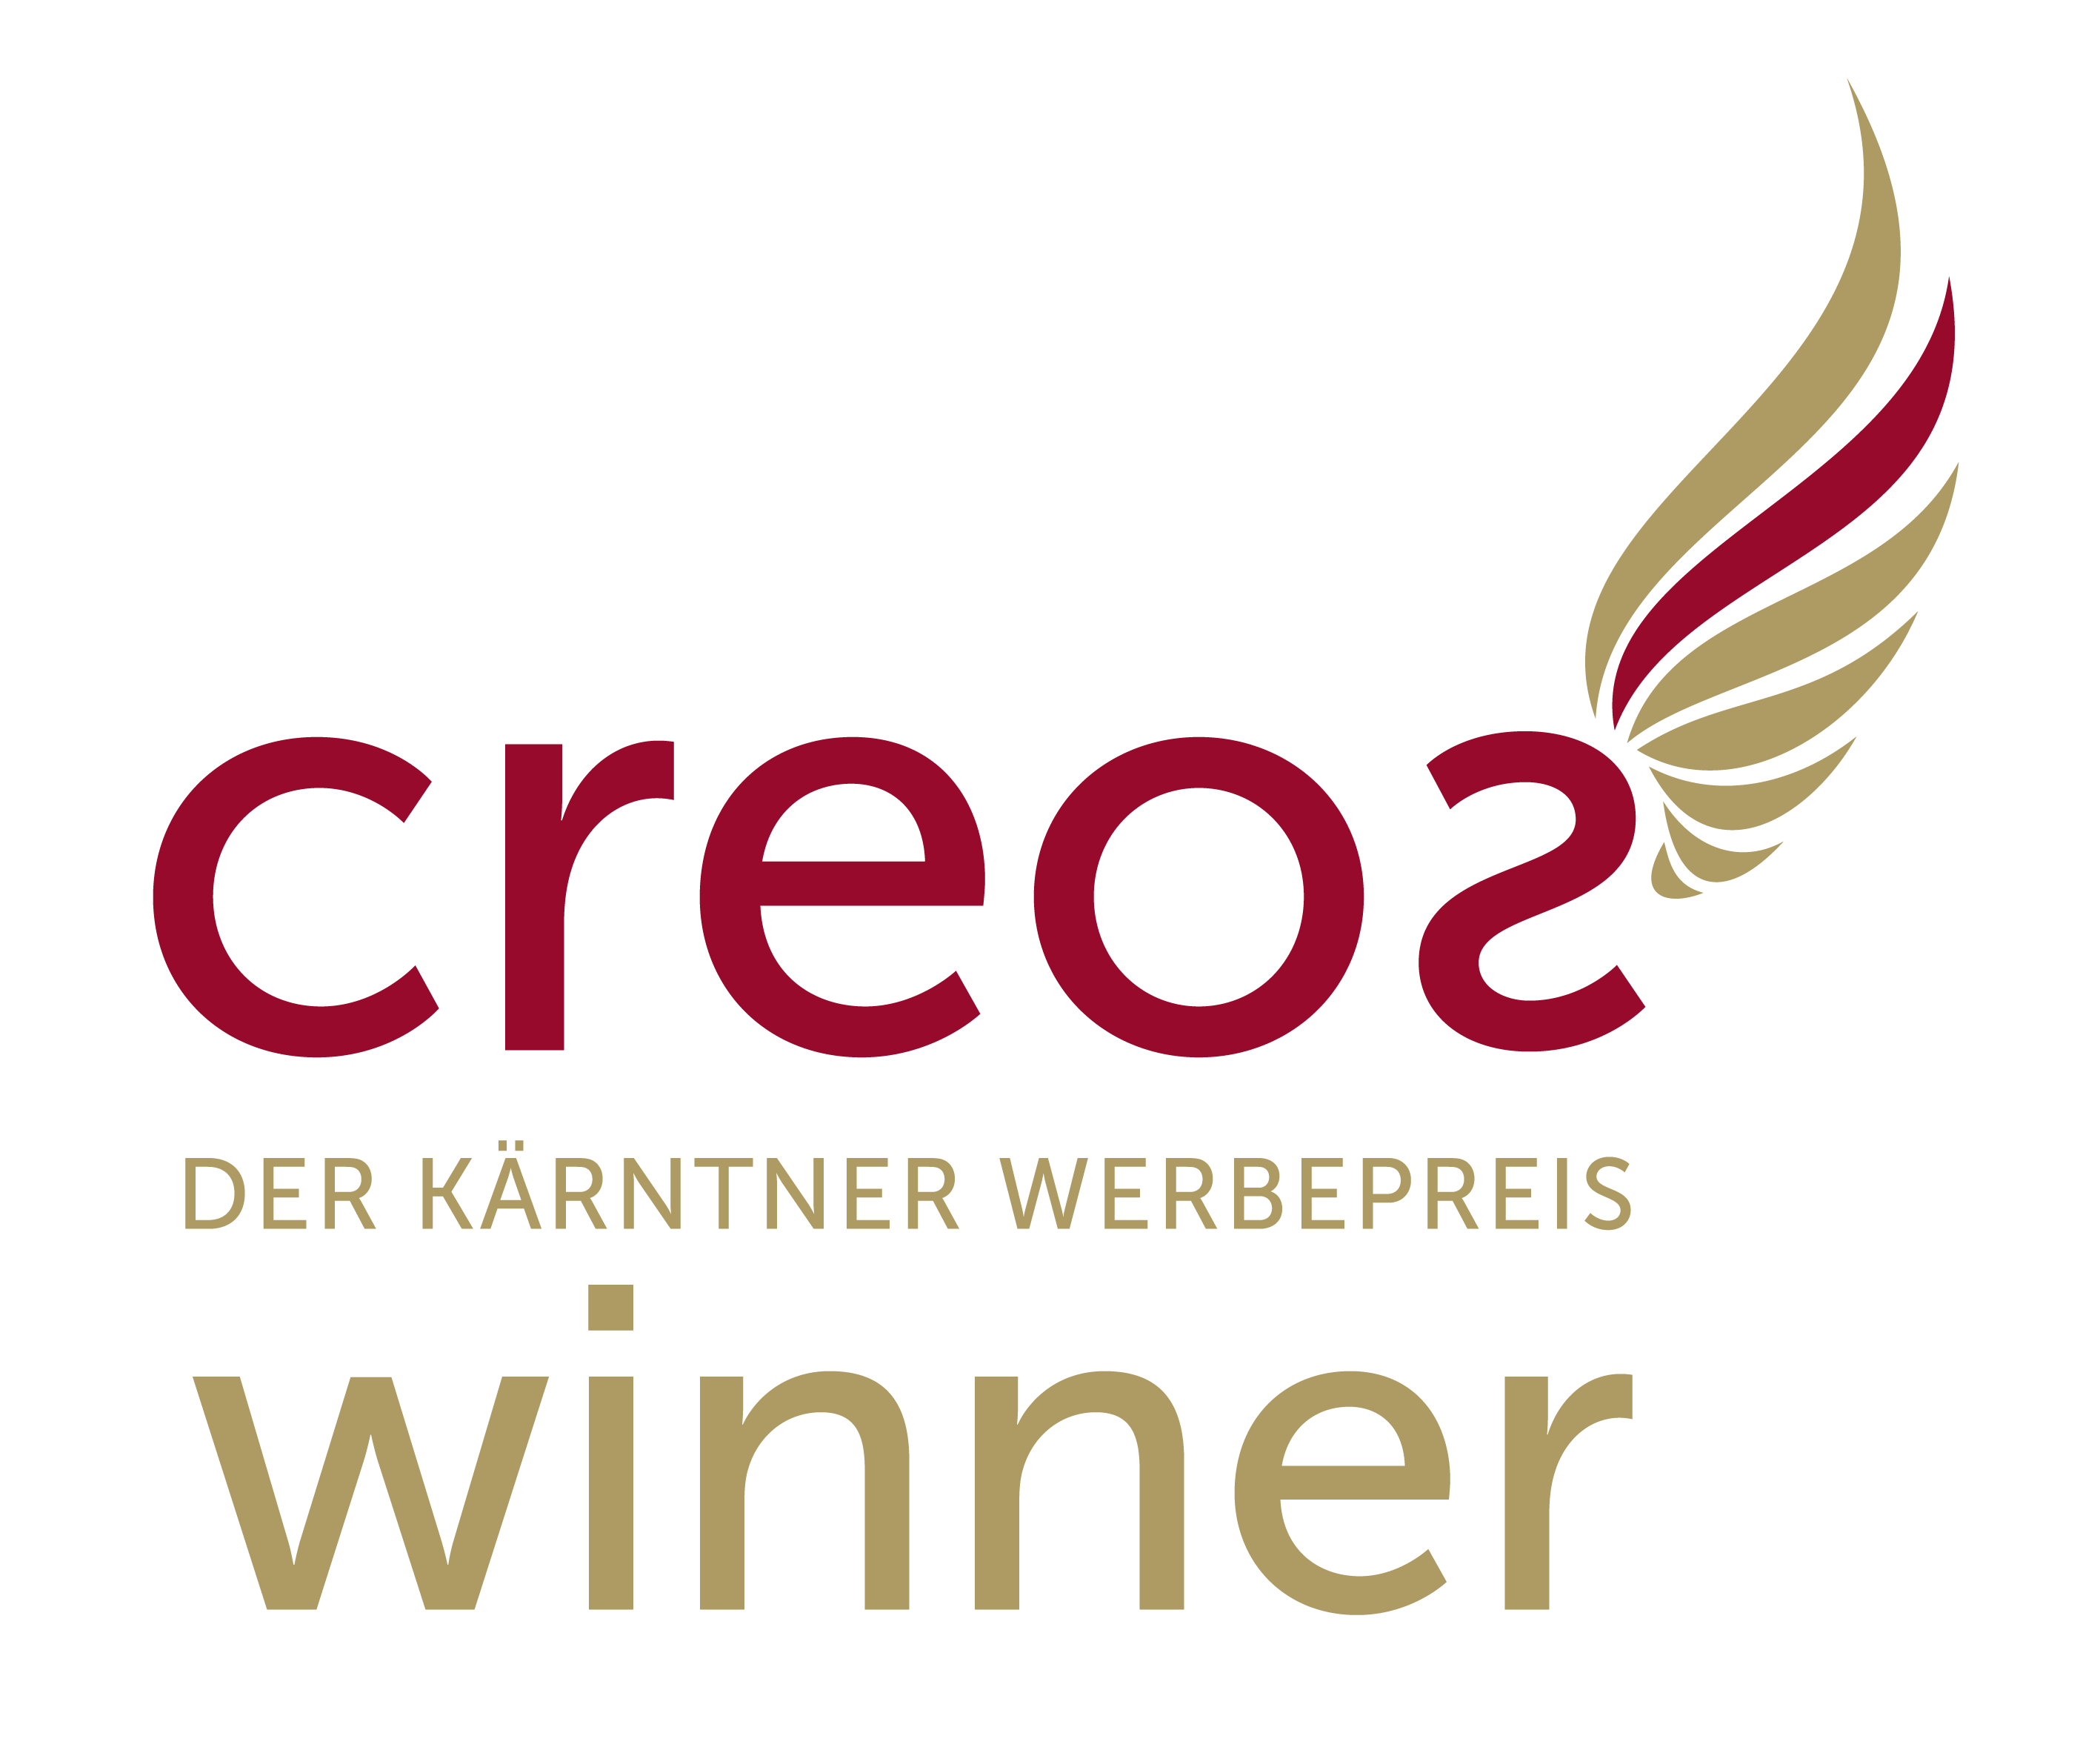 creos_winner Pixelpoesie, Kärntner Werbepreis 2016